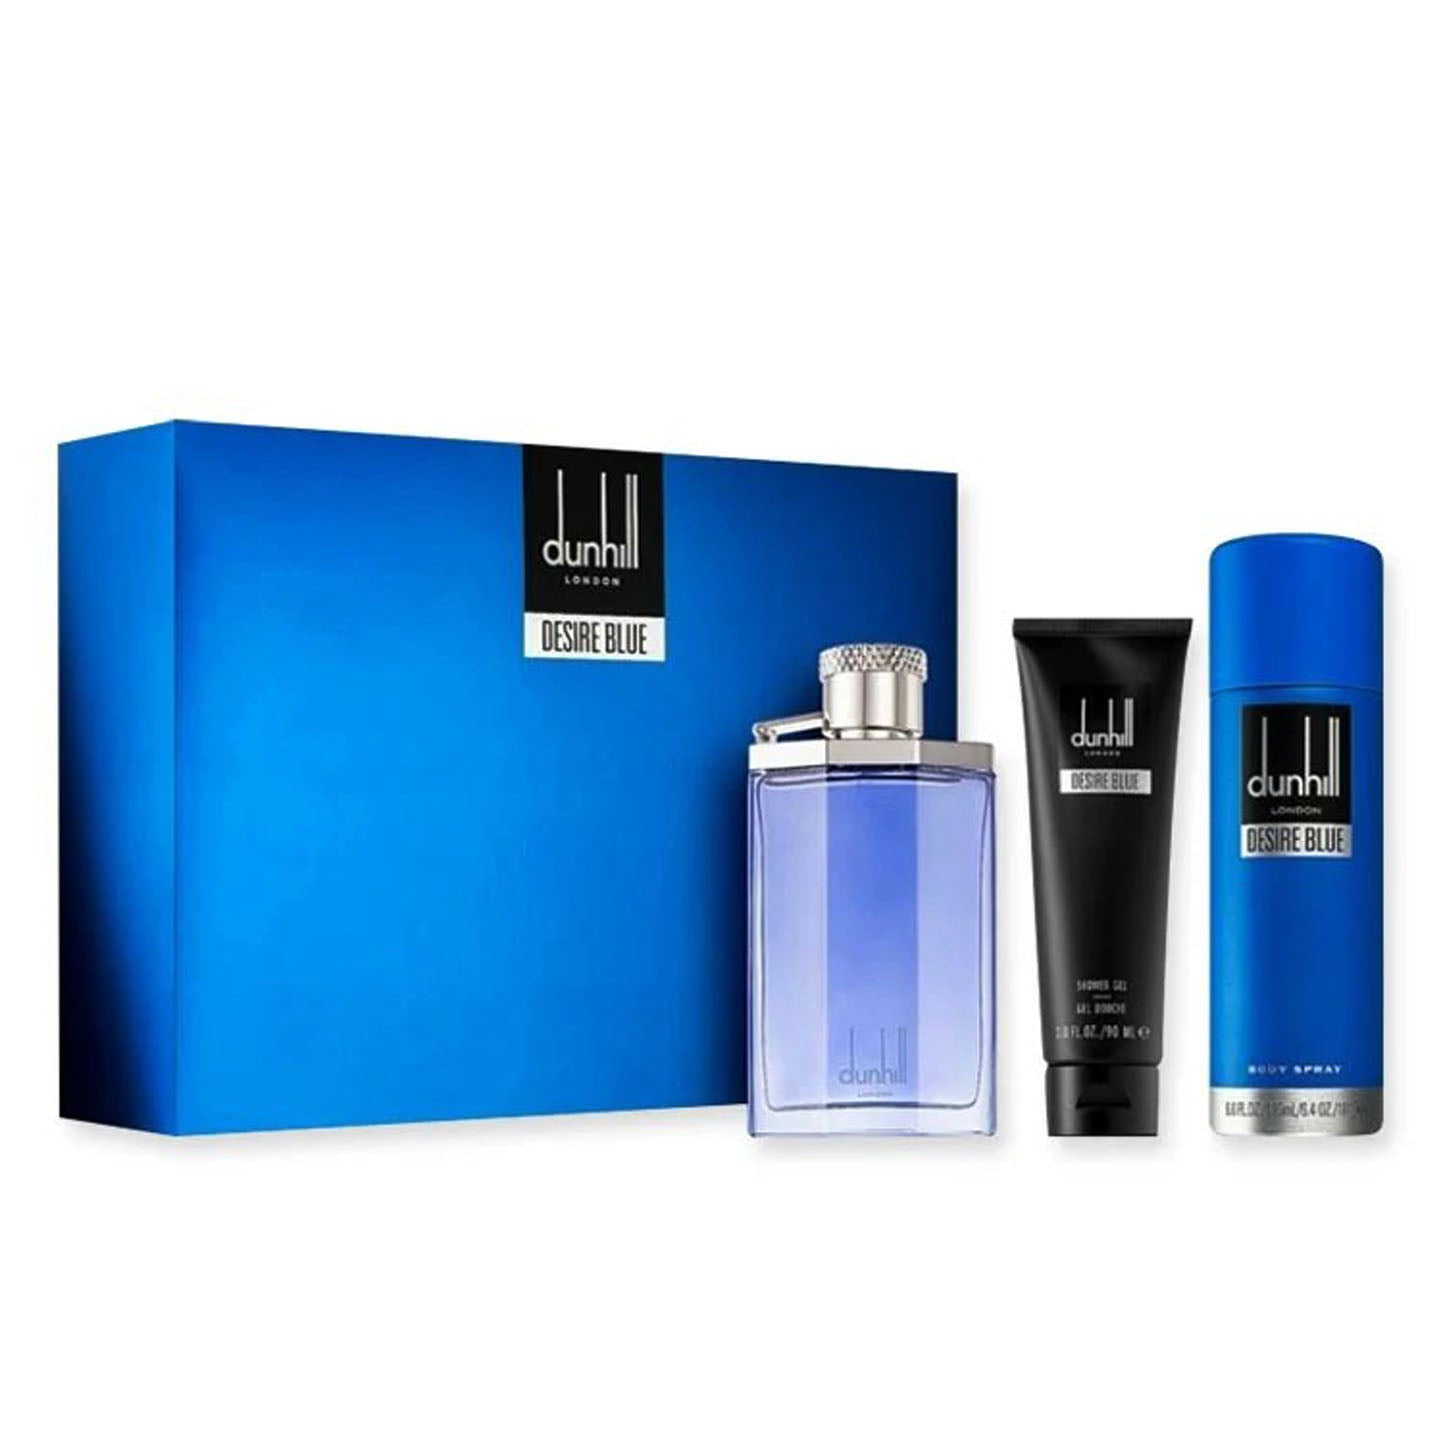 Alfred Dunhill Desire Blue Eau De Toilette Spray for Men